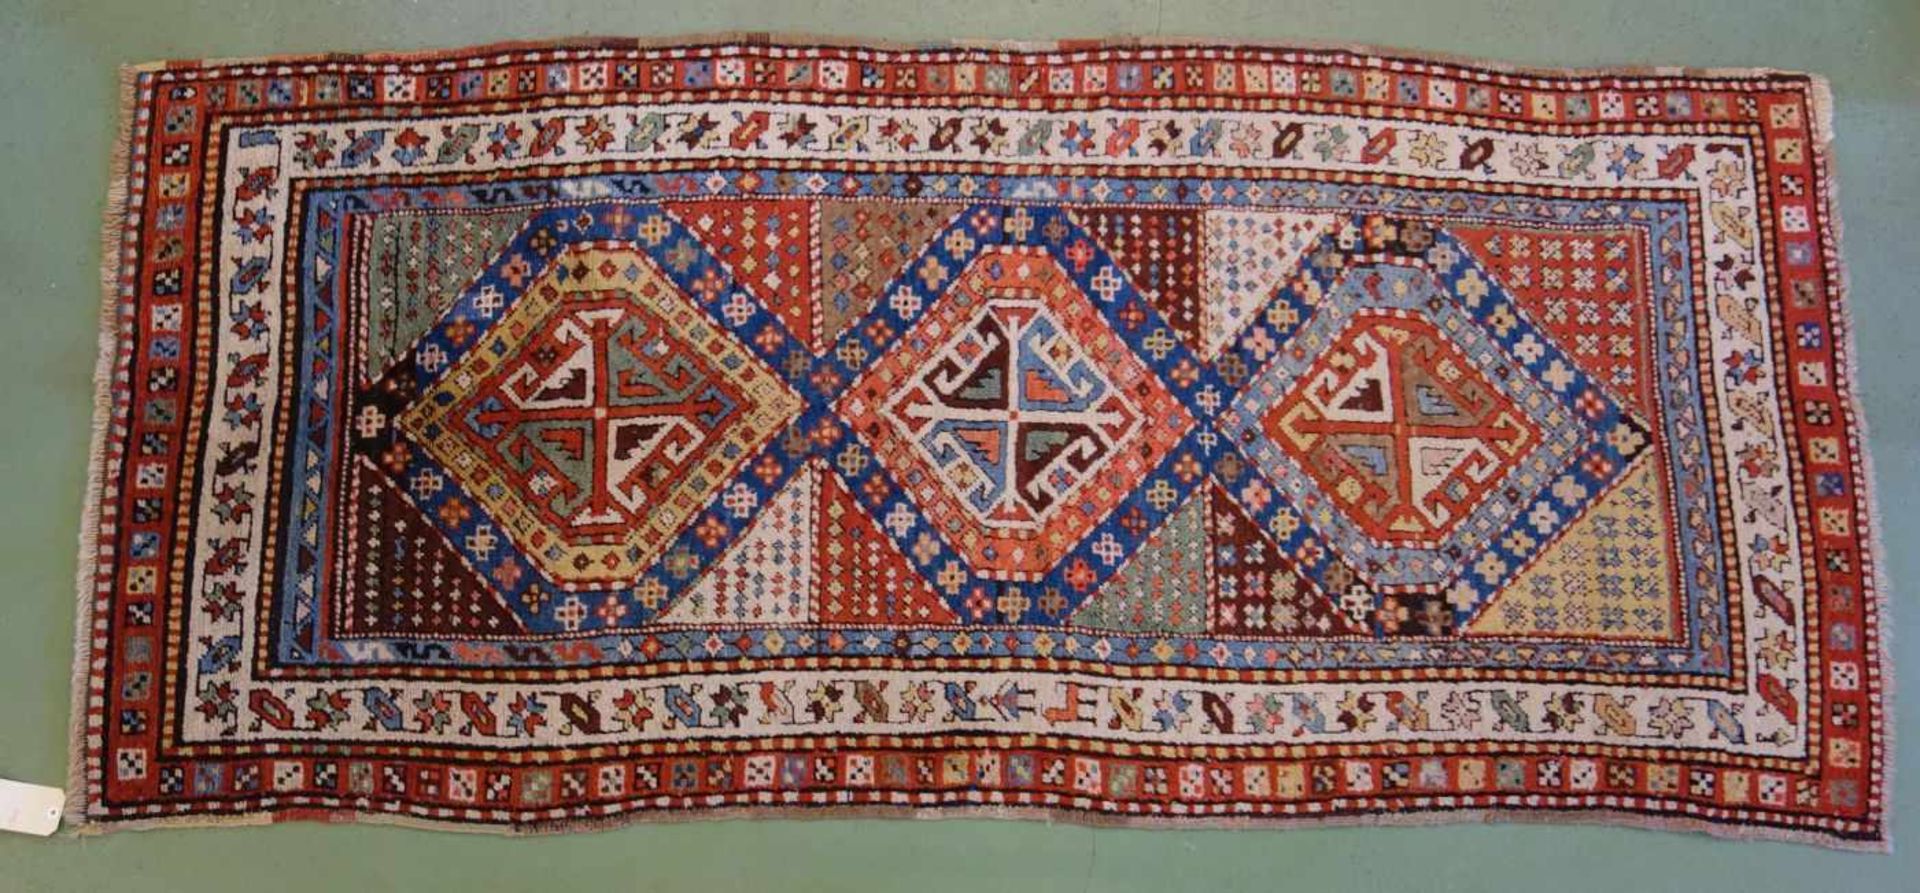 KAUKASISCHER MEDAILLONTEPPICH / carpet, wohl 19. Jh., Kaukasus / Schulaver-Kasak (Schulaver-